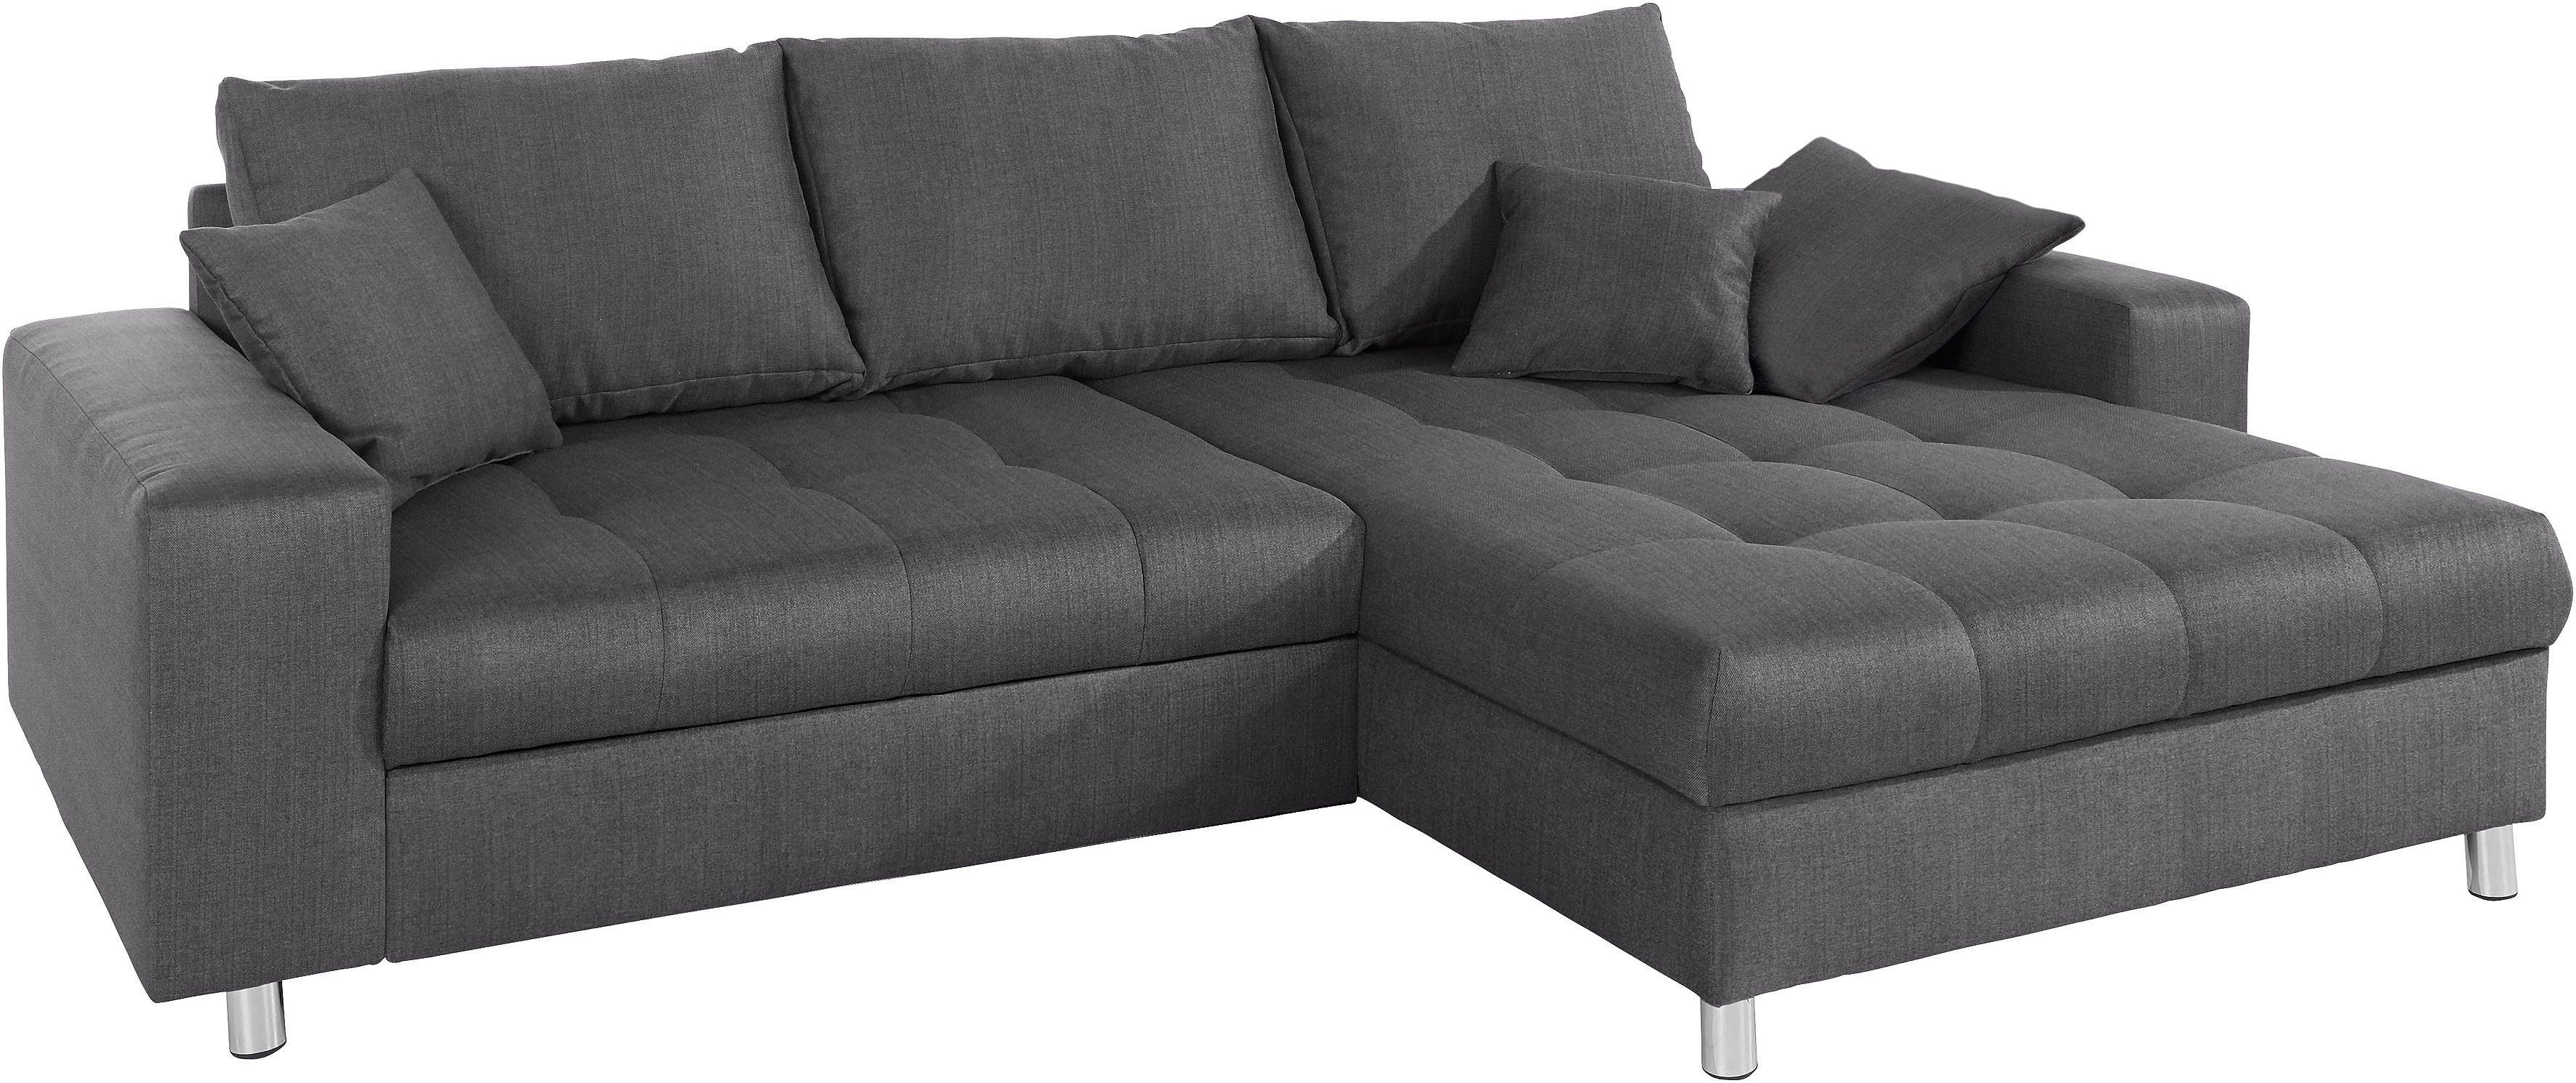 Mr. Couch Ecksofa Tobi, wahlweise mit Kaltschaum (140kg Belastung/Sitz),  RGB-LED-Beleuchtung, In mehreren Bezugsqualitäten erhältlich